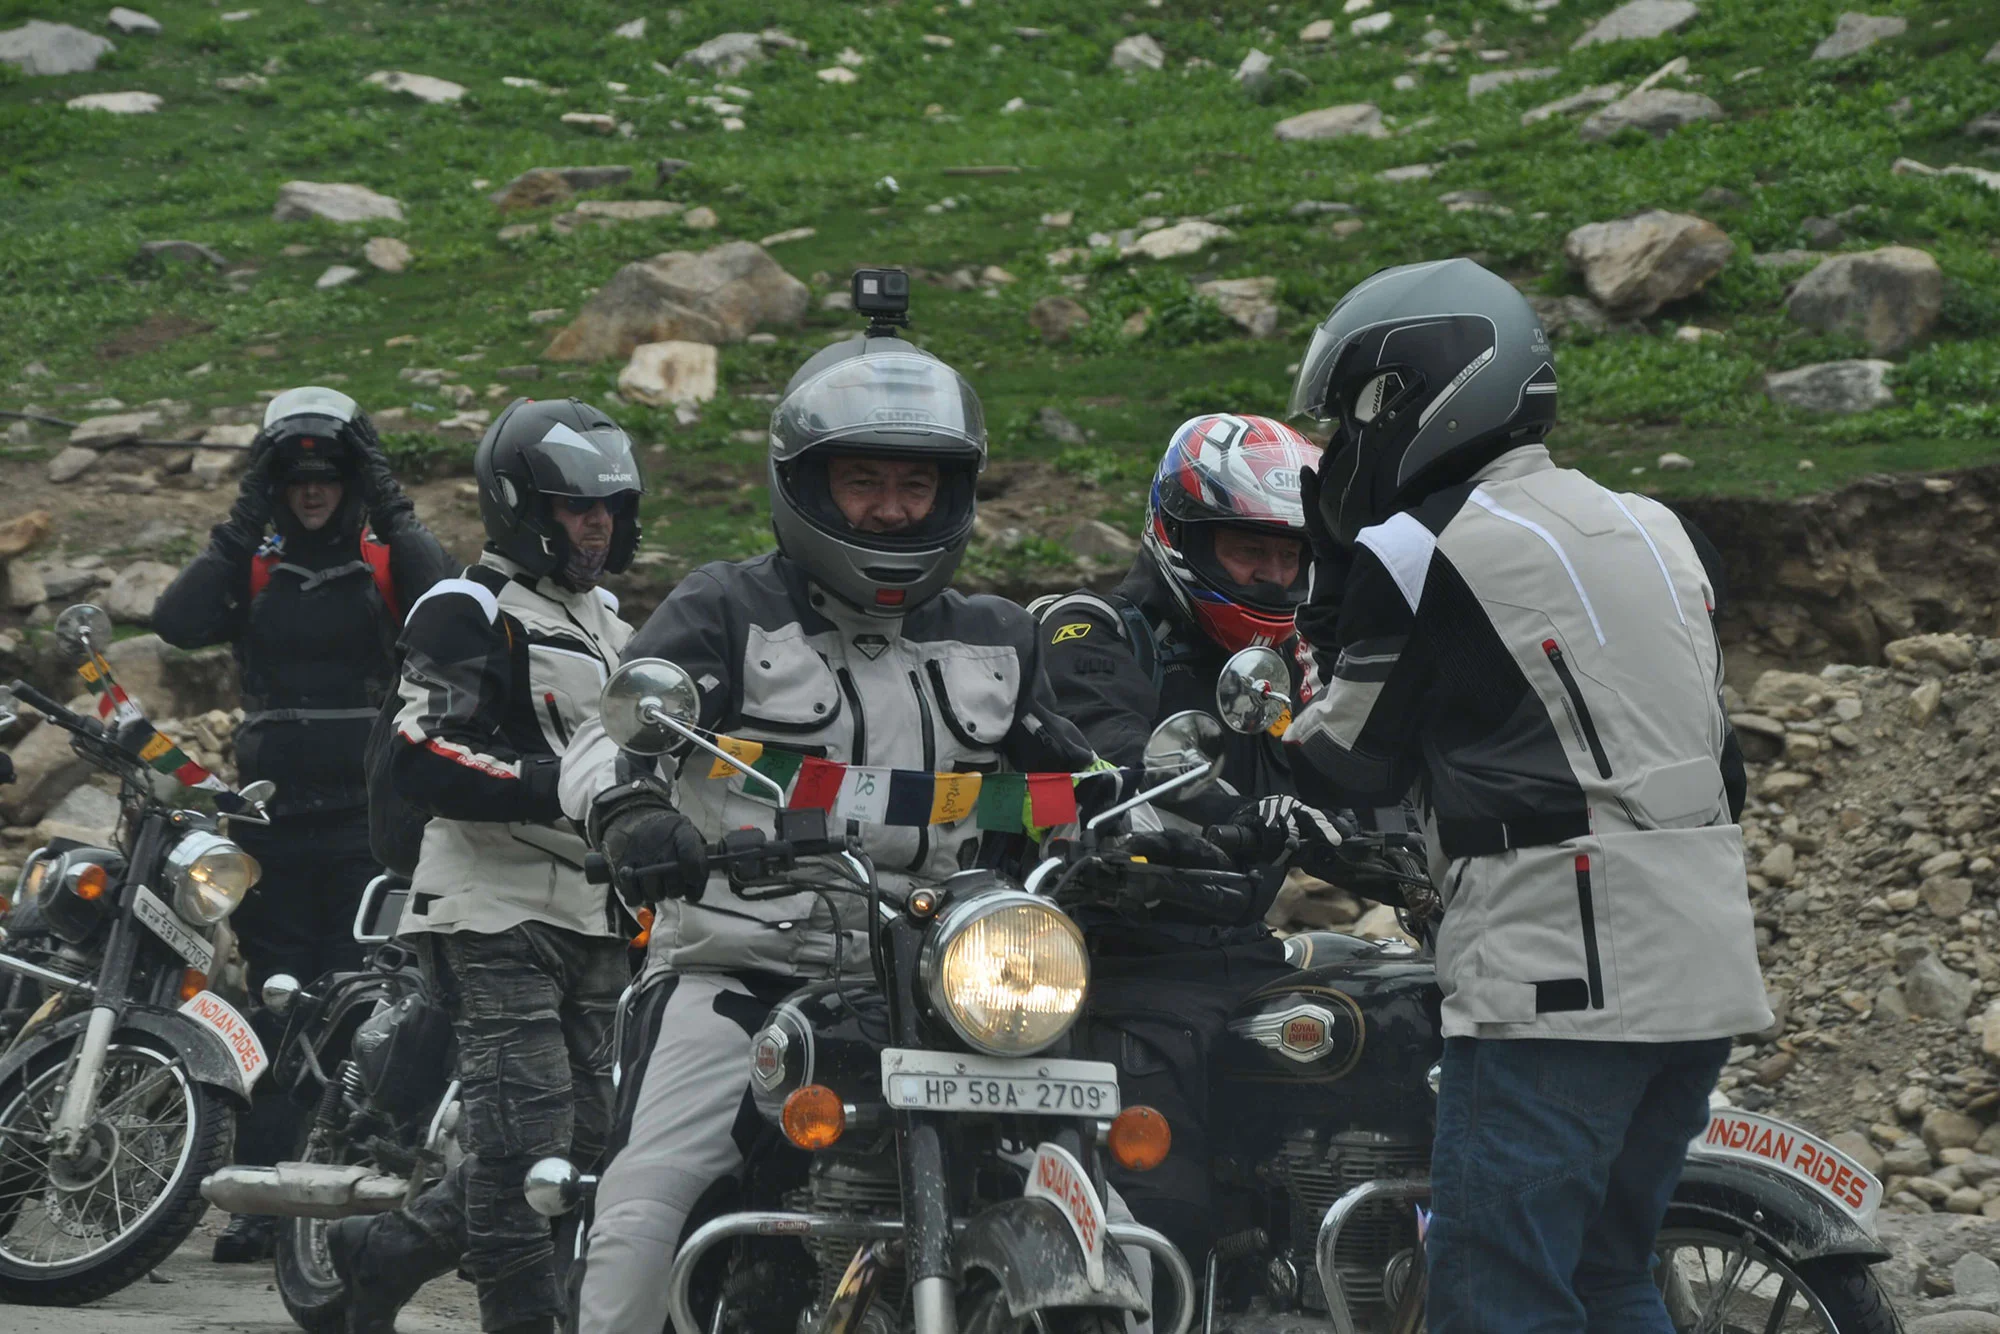 Moto Adventure in Himalayas